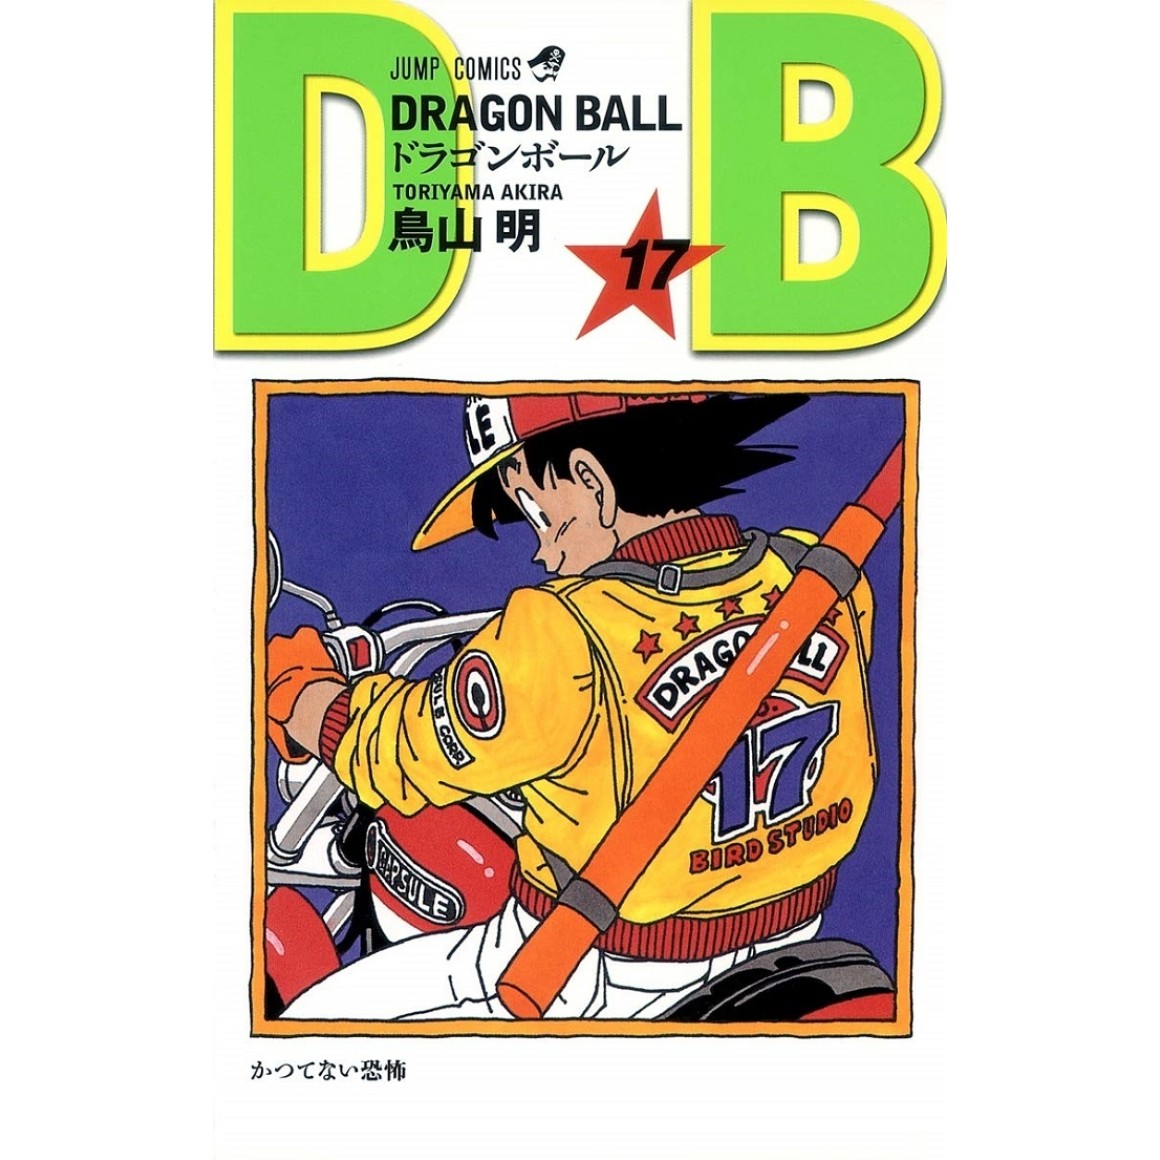 Esferas do Dragão Amigurumi - Dragon Ball